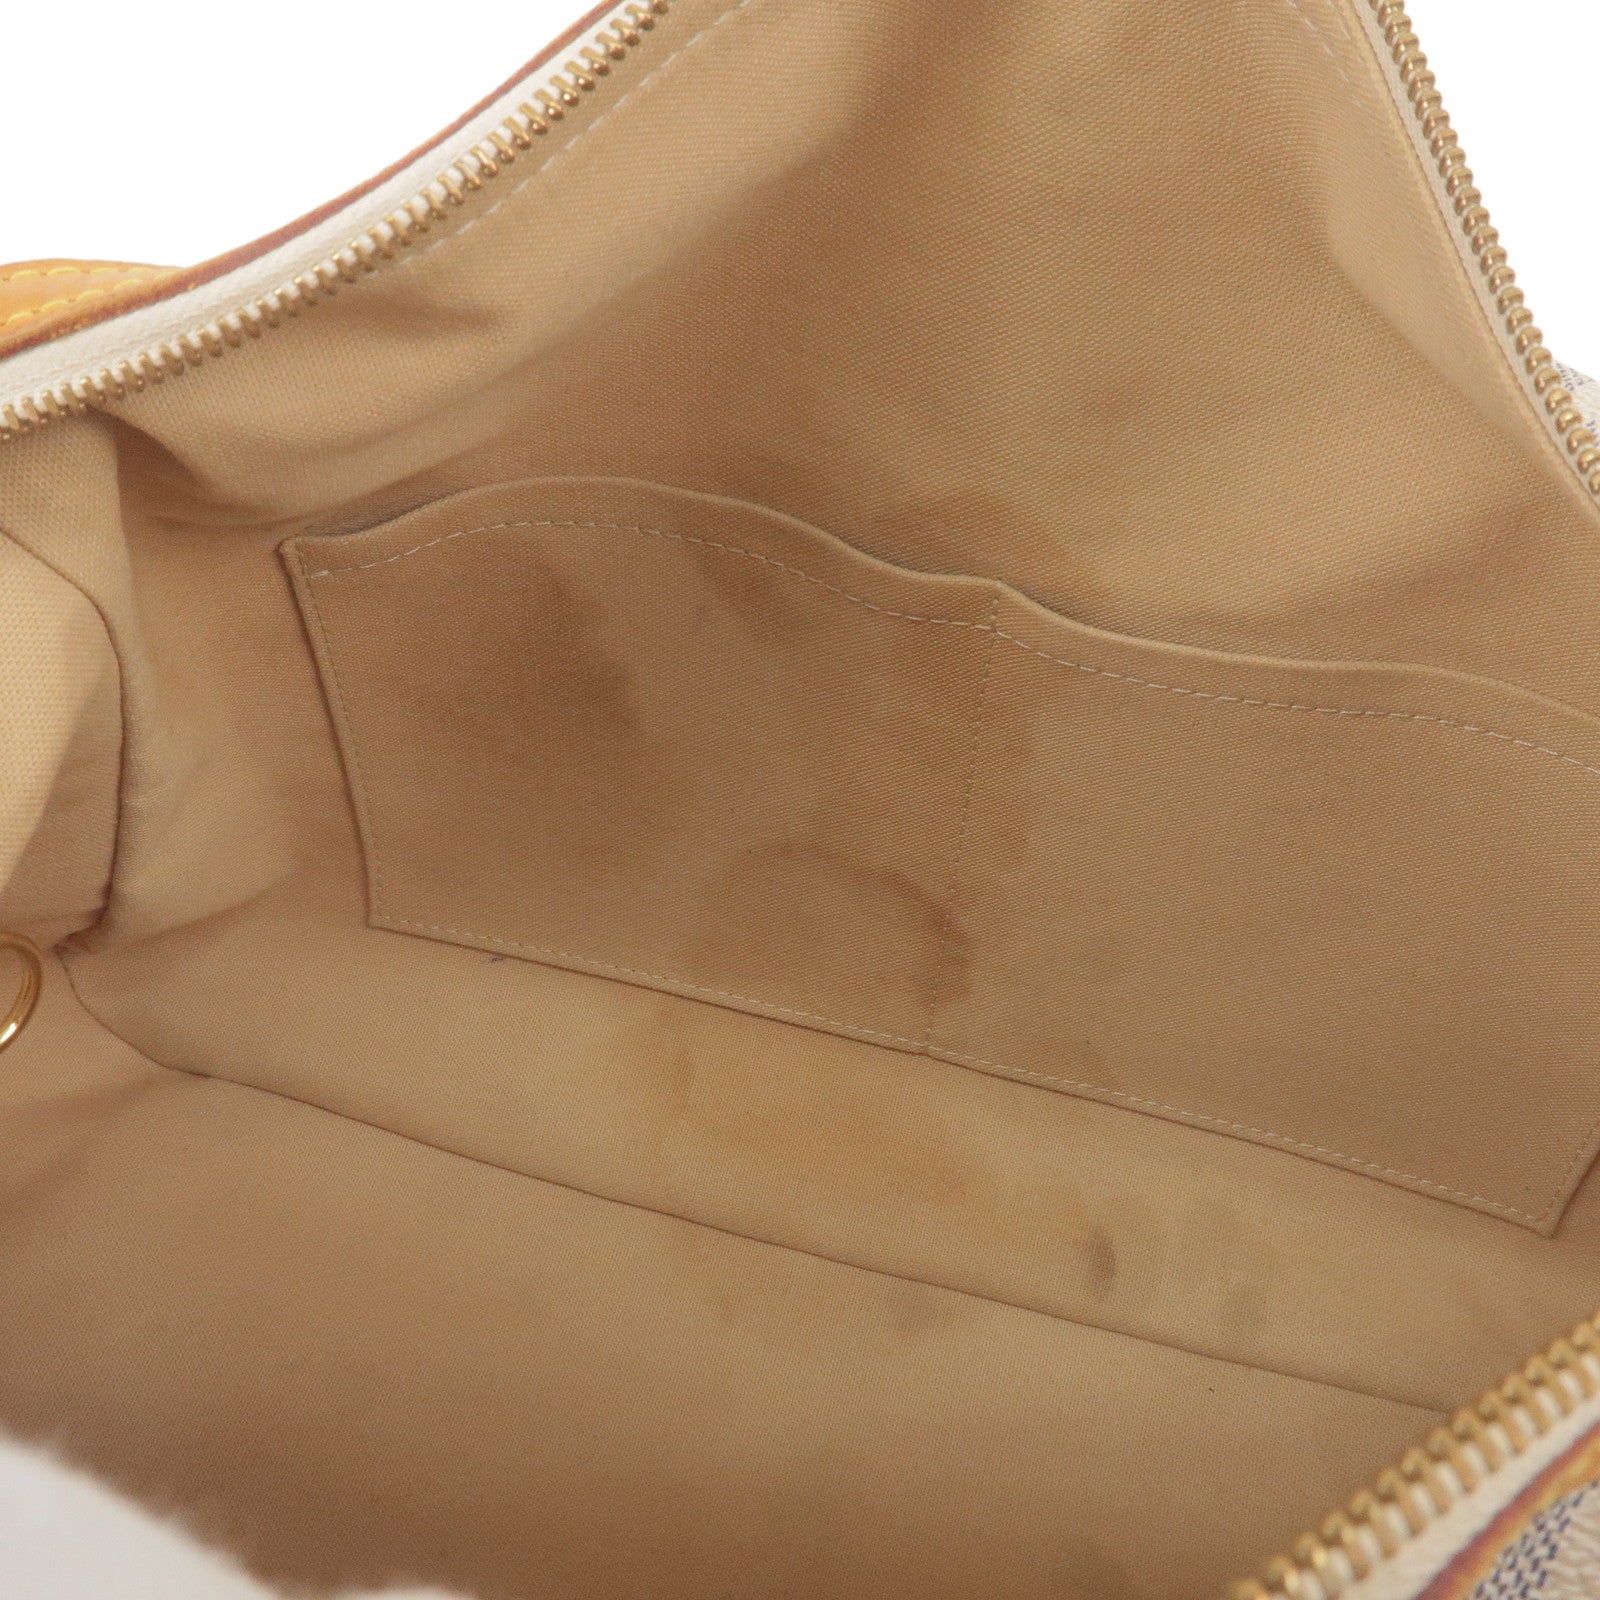 Louis Vuitton Hand Bag Stresa Pm Damier Azur Canvas Shoulder Tote N42220  Auction